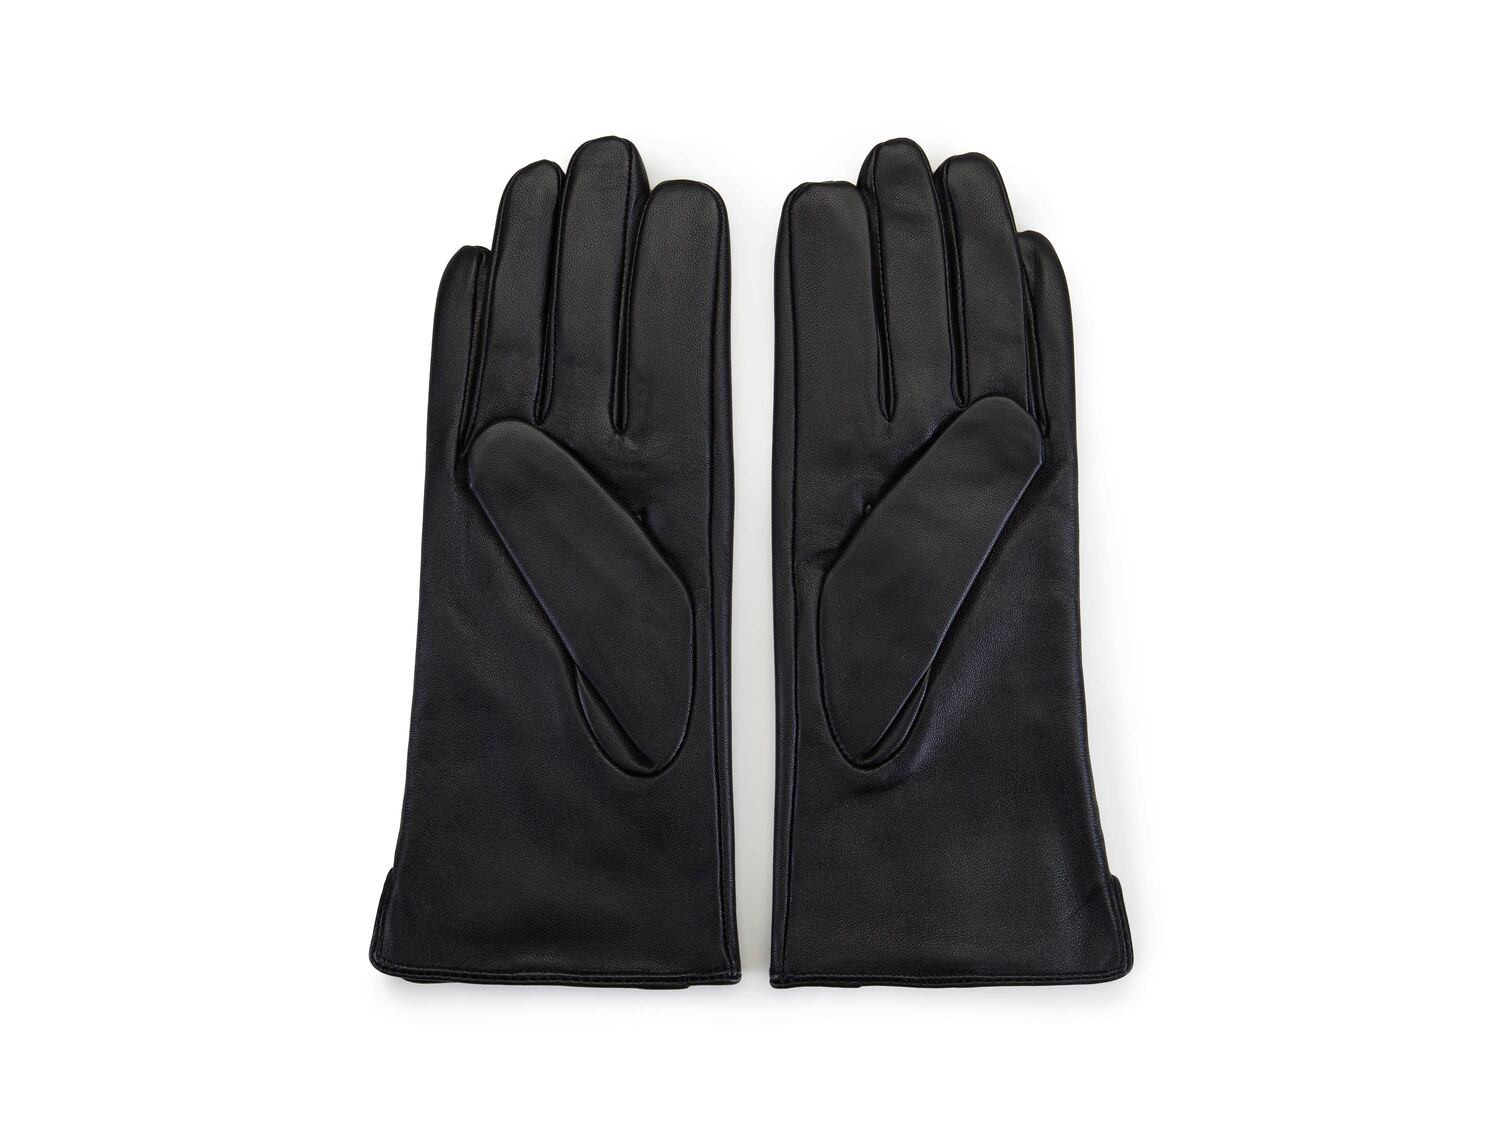 Rękawiczki damskie Wittchen, cena 89,00 PLN 
- rozmiary: S-M
- ocieplane
- materiał: ...